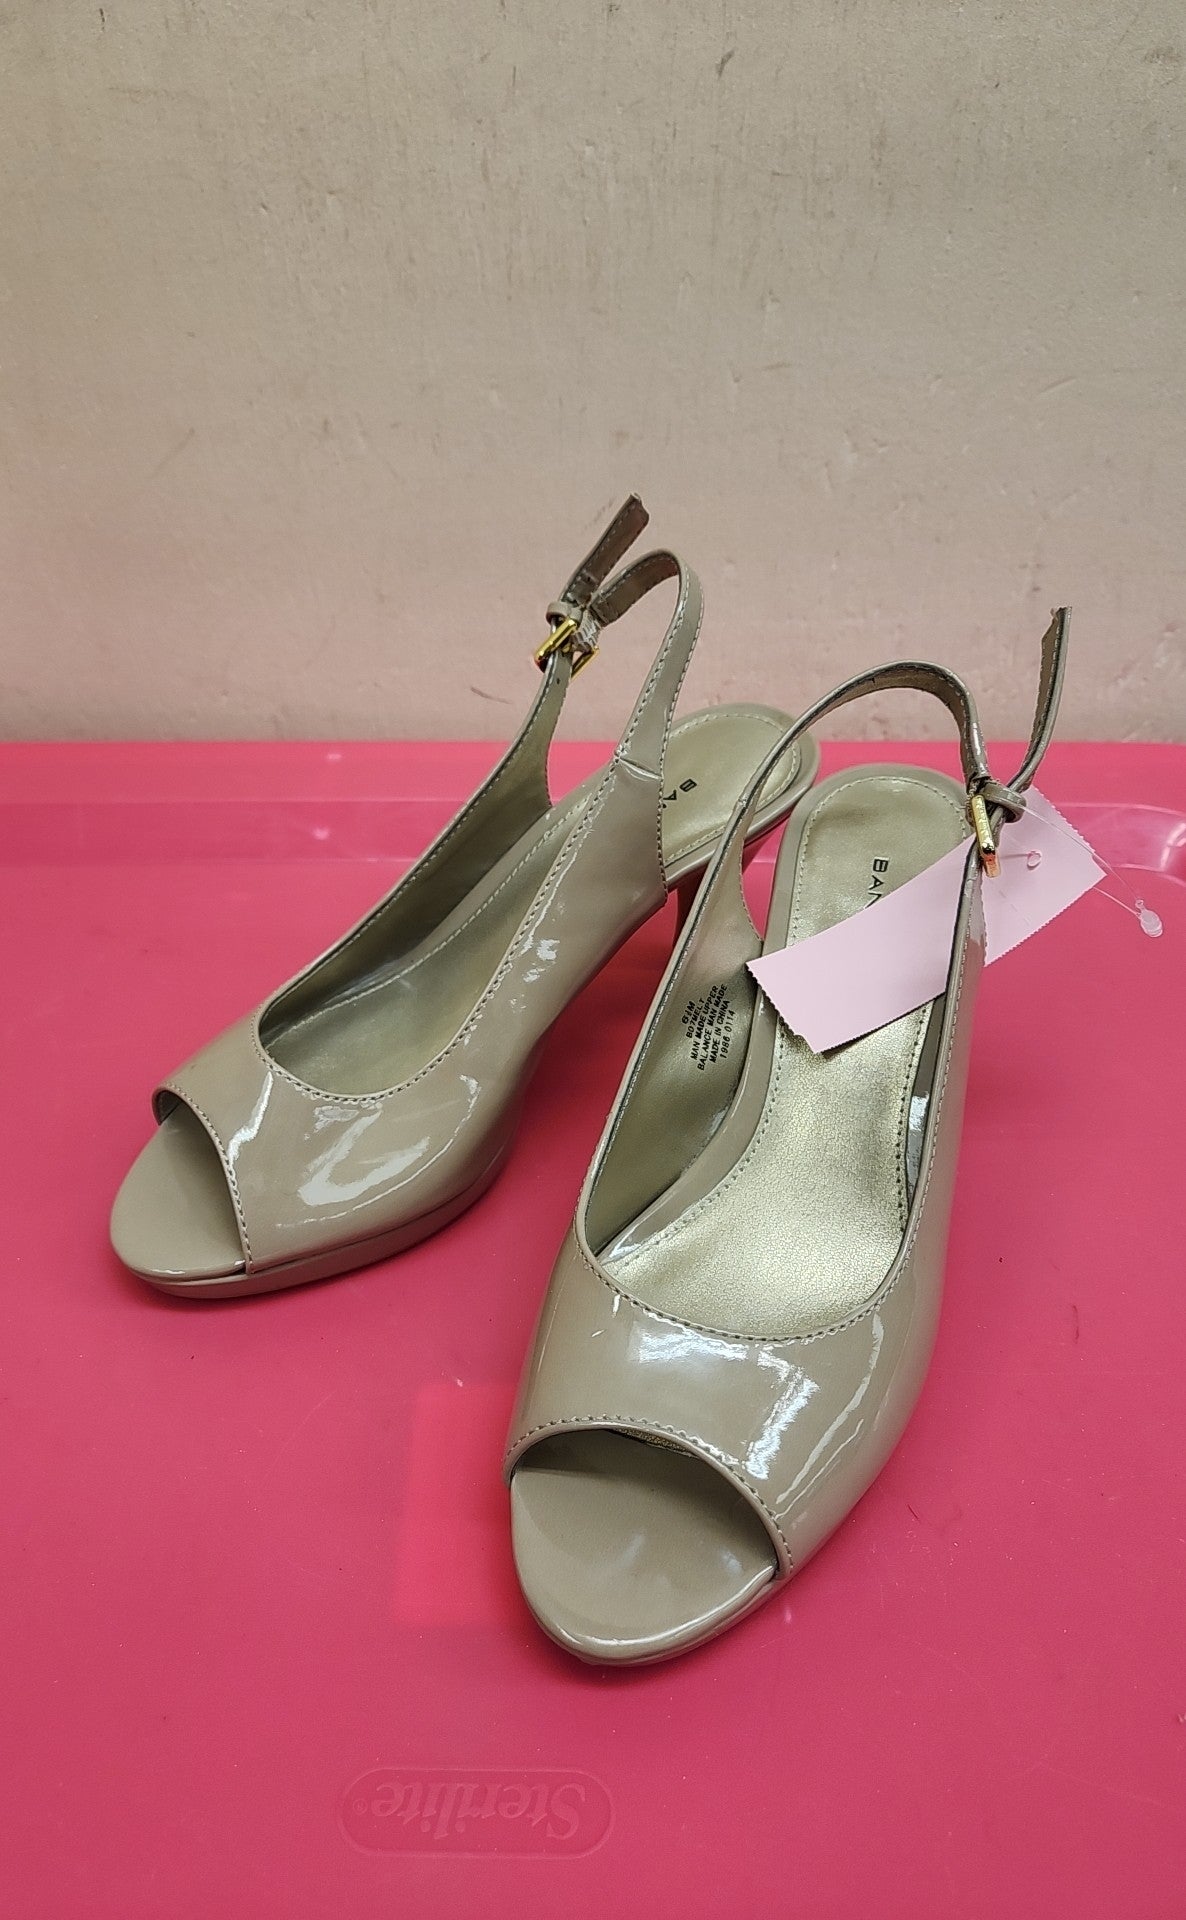 Bandolino Women's Size 6-1/2 Beige Sandals